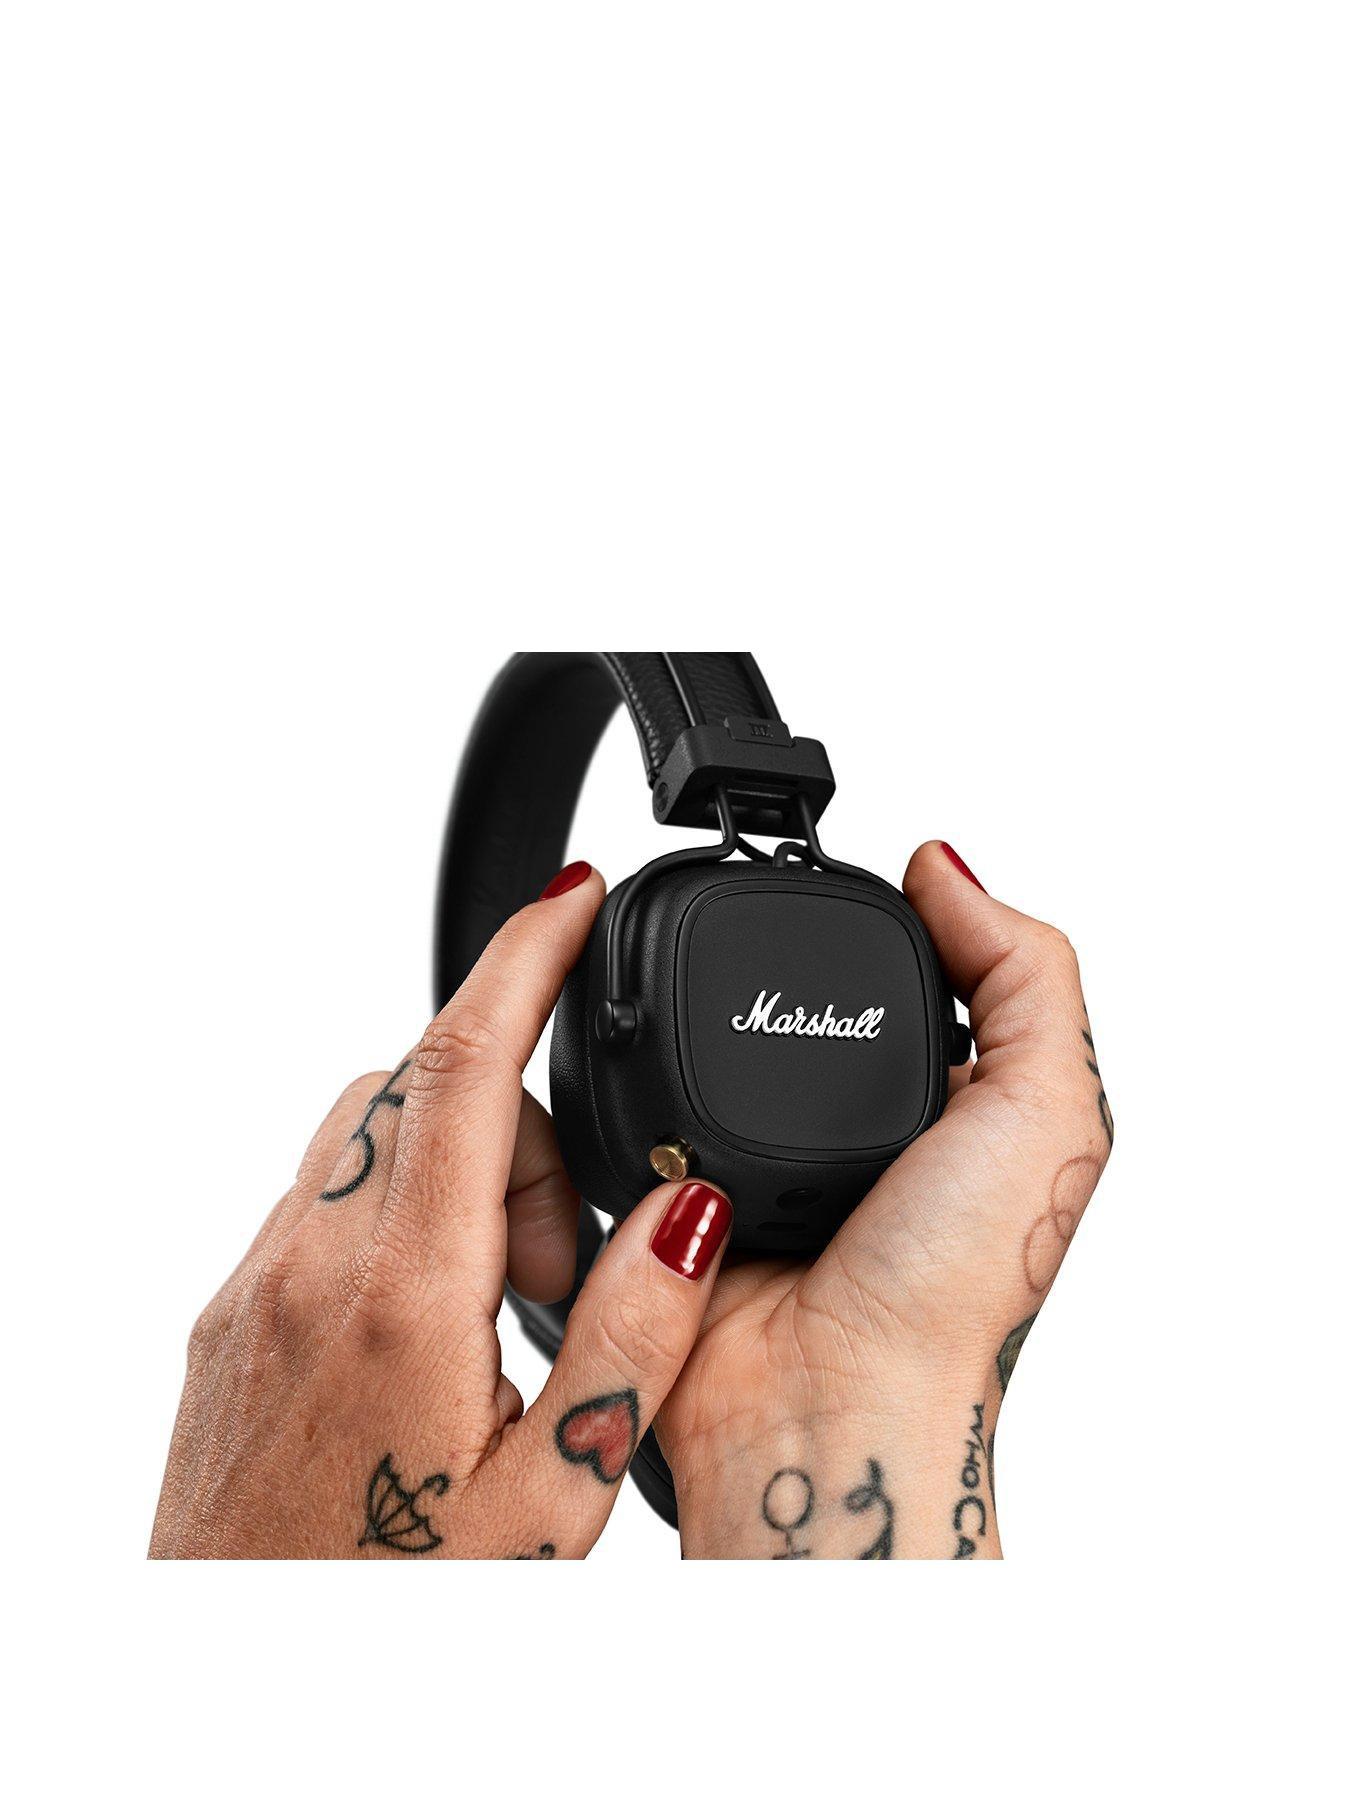 Major IV Bluetooth Headphones - Black